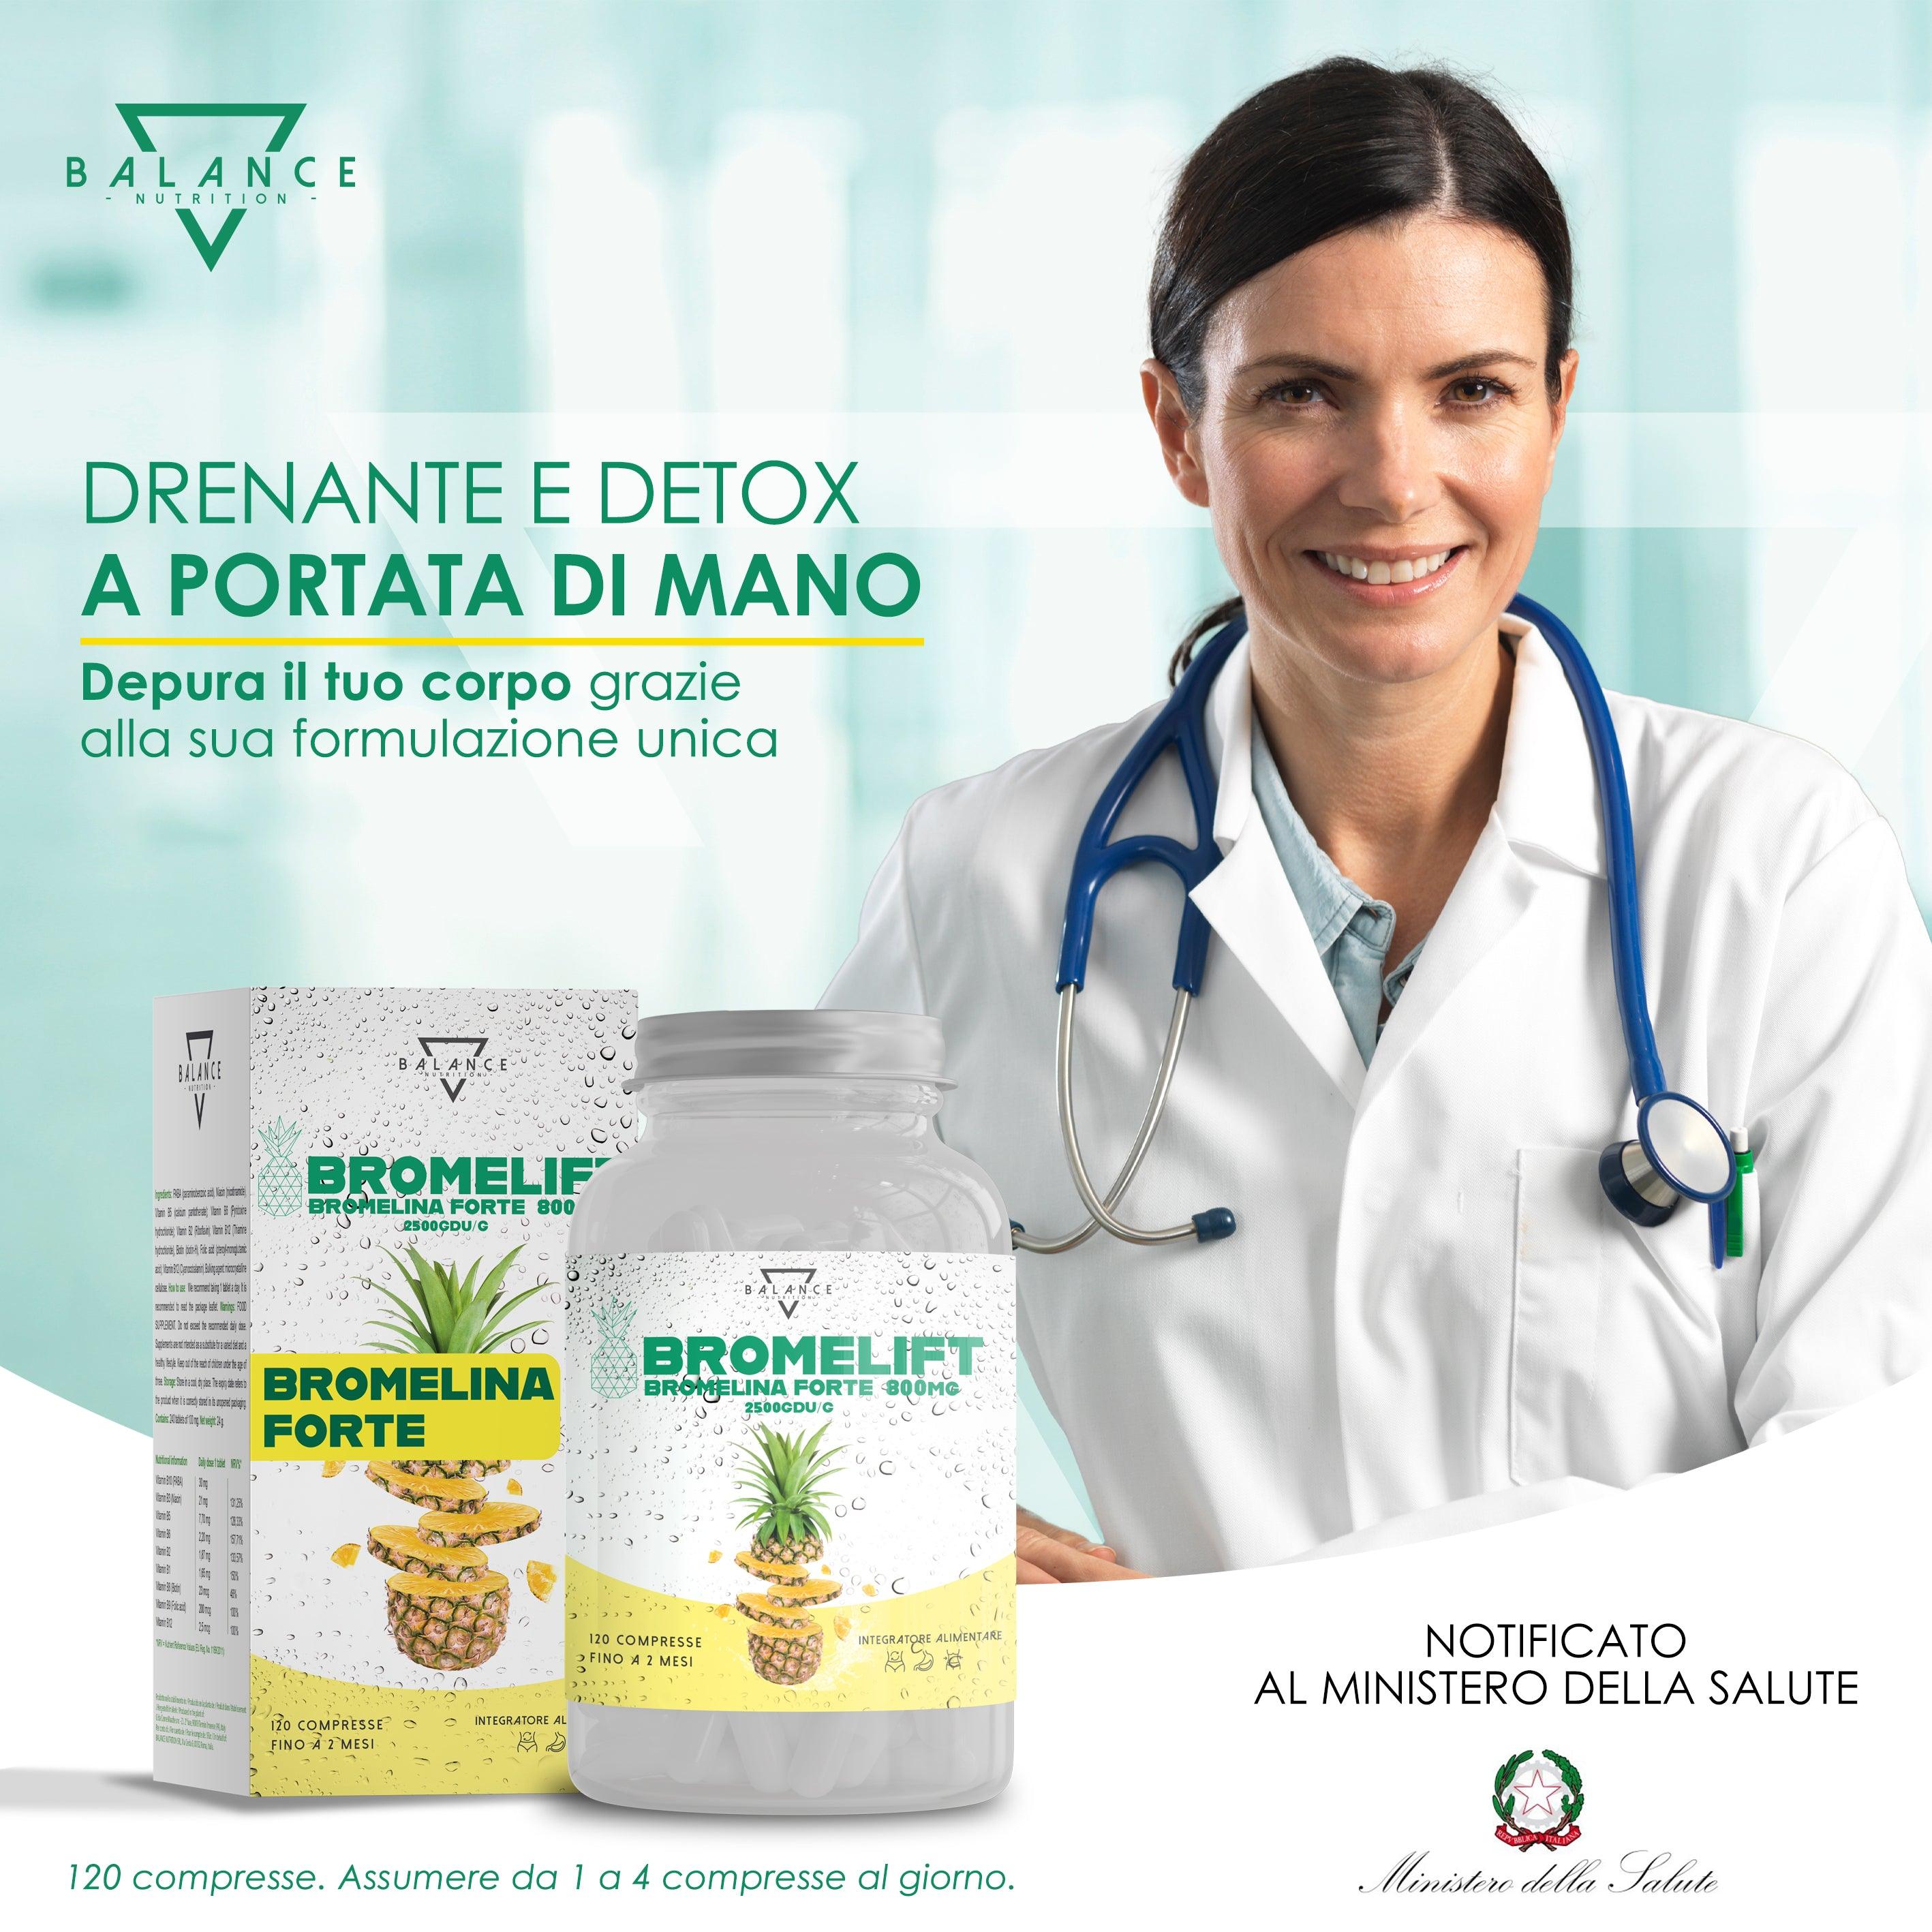 BROMELIFT®| Bromelina Forte Drenante - Balance Nutrition